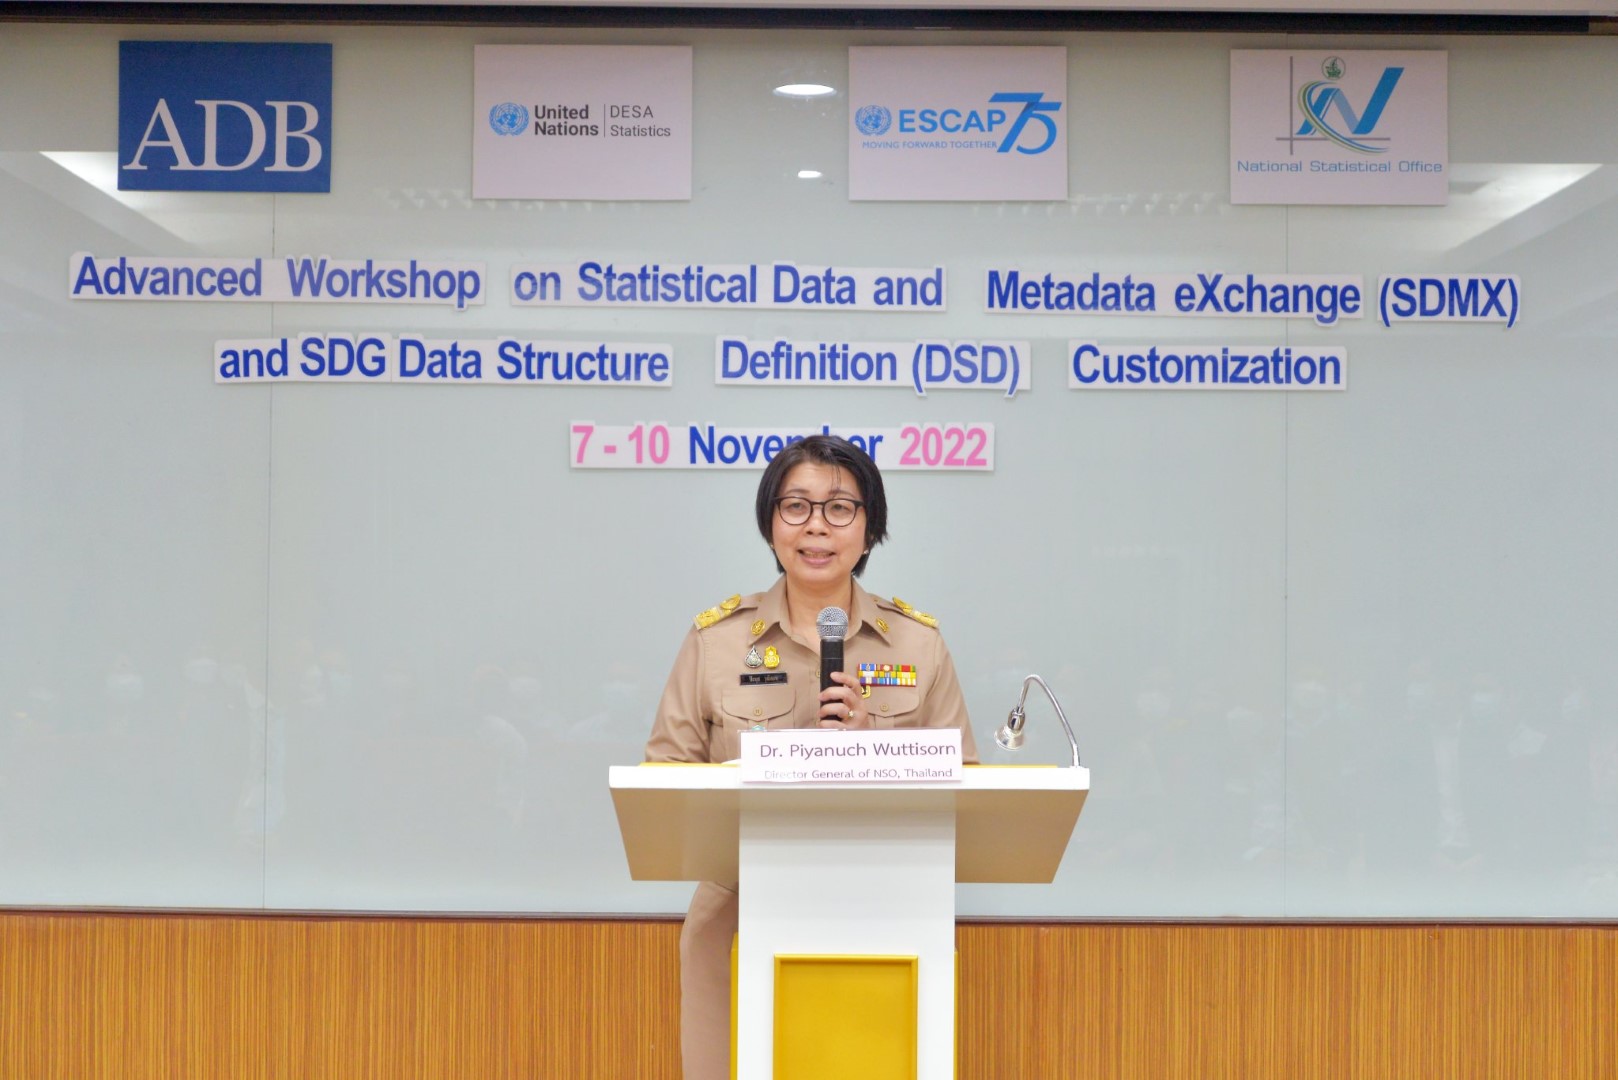 การฝึกอบรมหลักสูตร Advanced Workshop on Statistical Data and Metadata eXchange (SDMX) and SDG Data Structure Definition (DSD) Customization ในโครงการ Data for Development (Phase 2)  